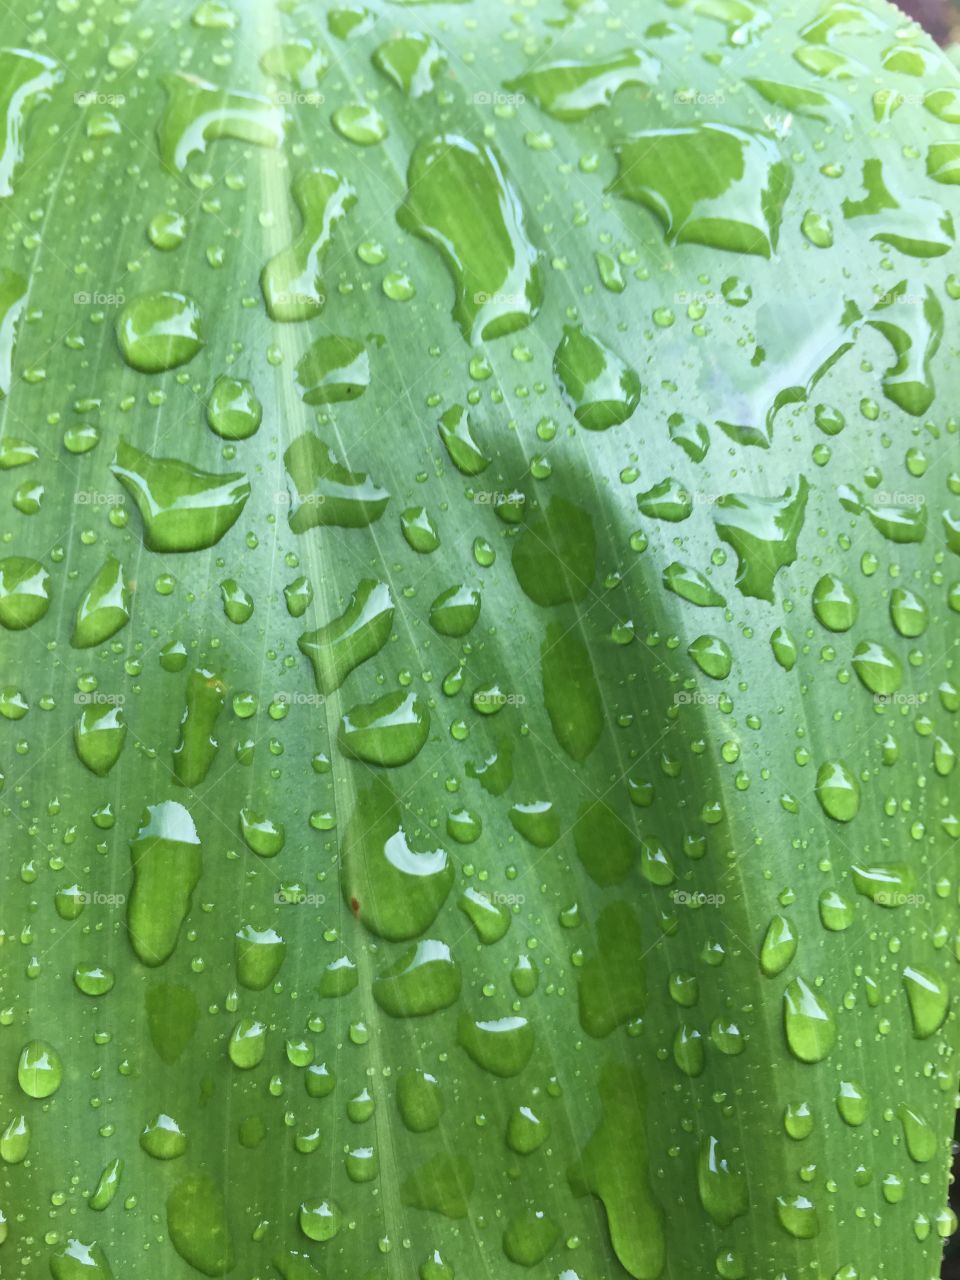 Raindrops on ti leaf